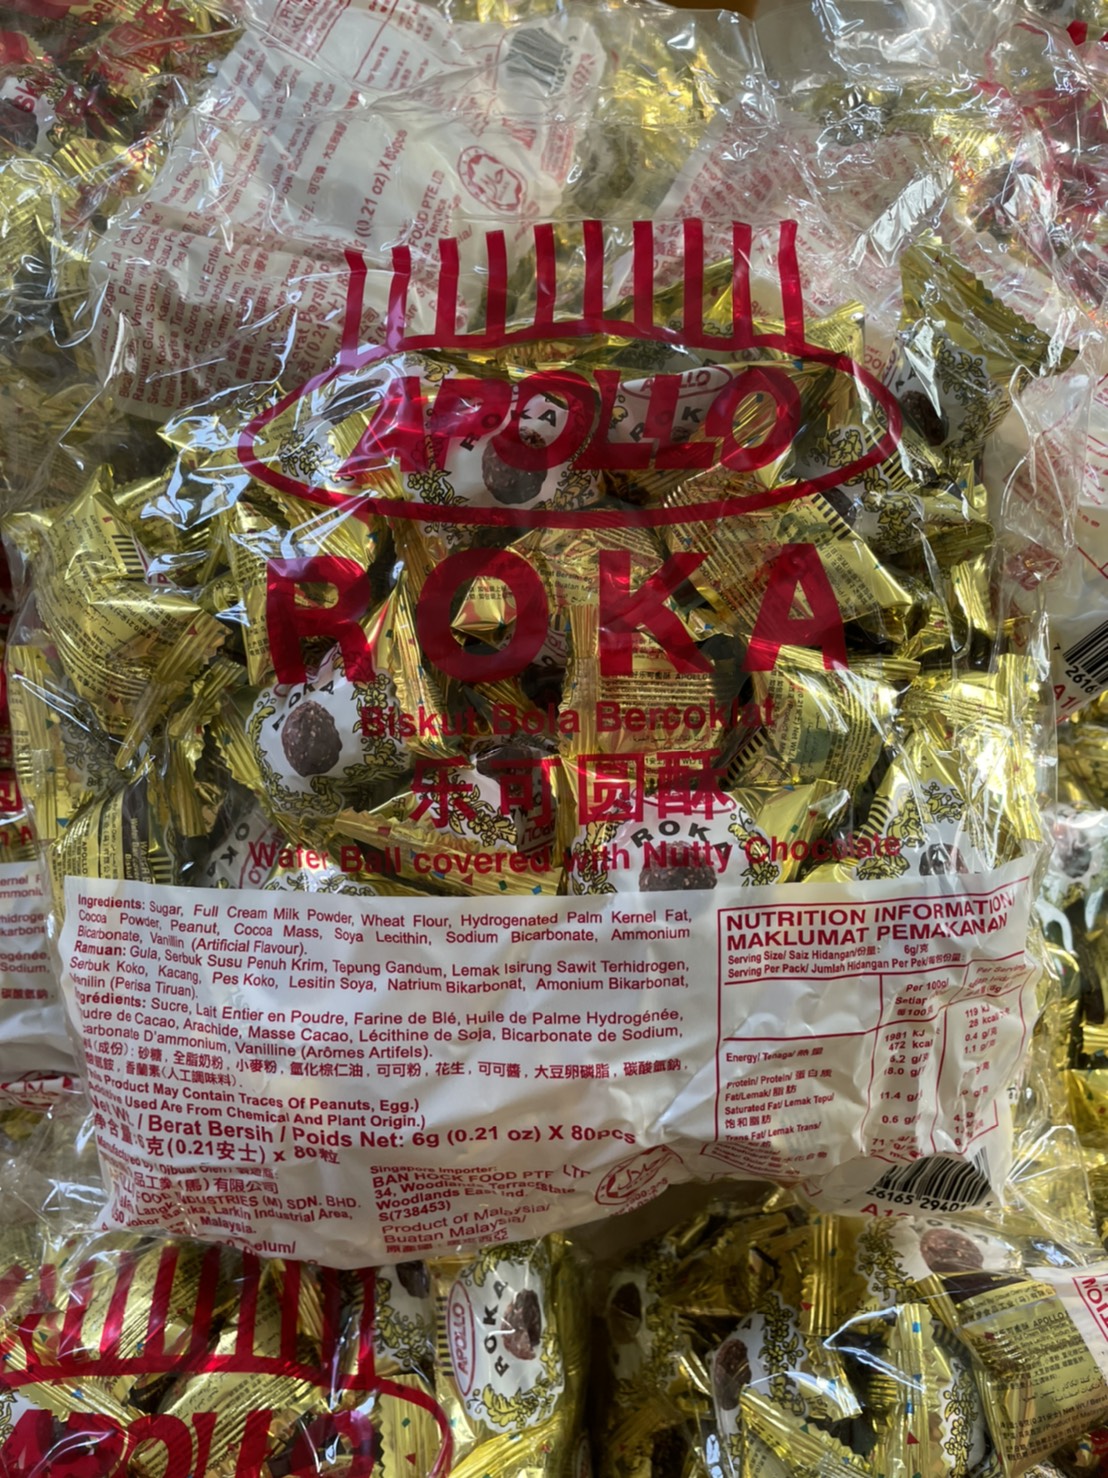 🍬🍬โรก้า Apollo Roka เวเฟอร์ลูกกลมสอดไส้ช็อคโกแลต ช็อคโกแลต ช็อคโกแลตบอล🍬🍬